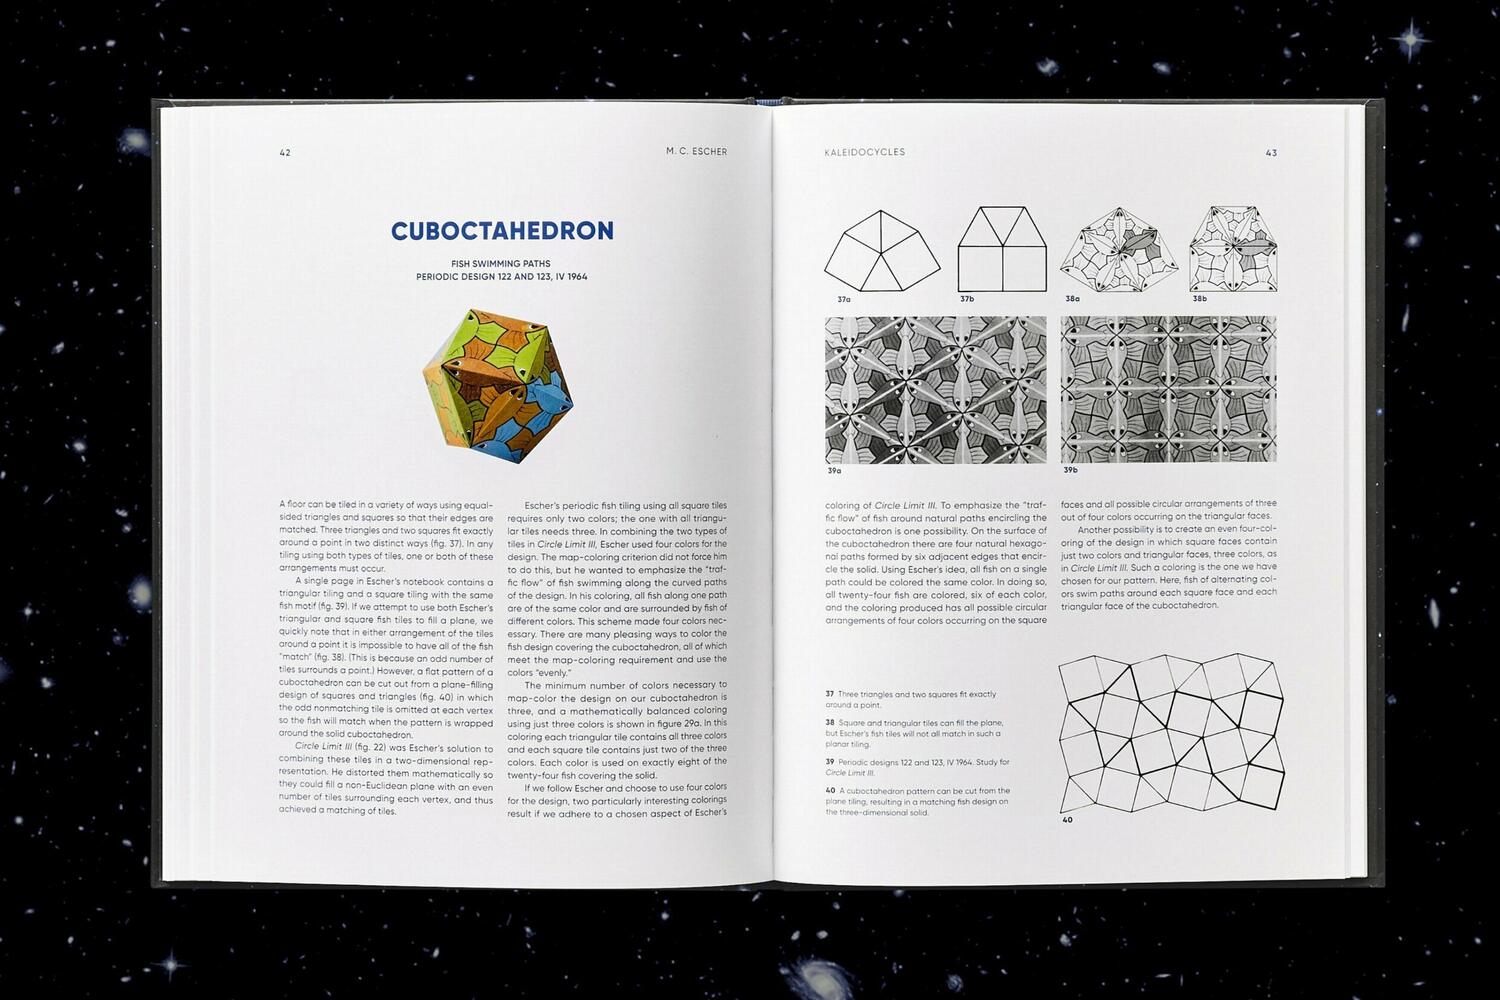 Bild: 9783836583688 | M.C. Escher. Kaleidozyklen | Doris Schattschneider (u. a.) | Buch